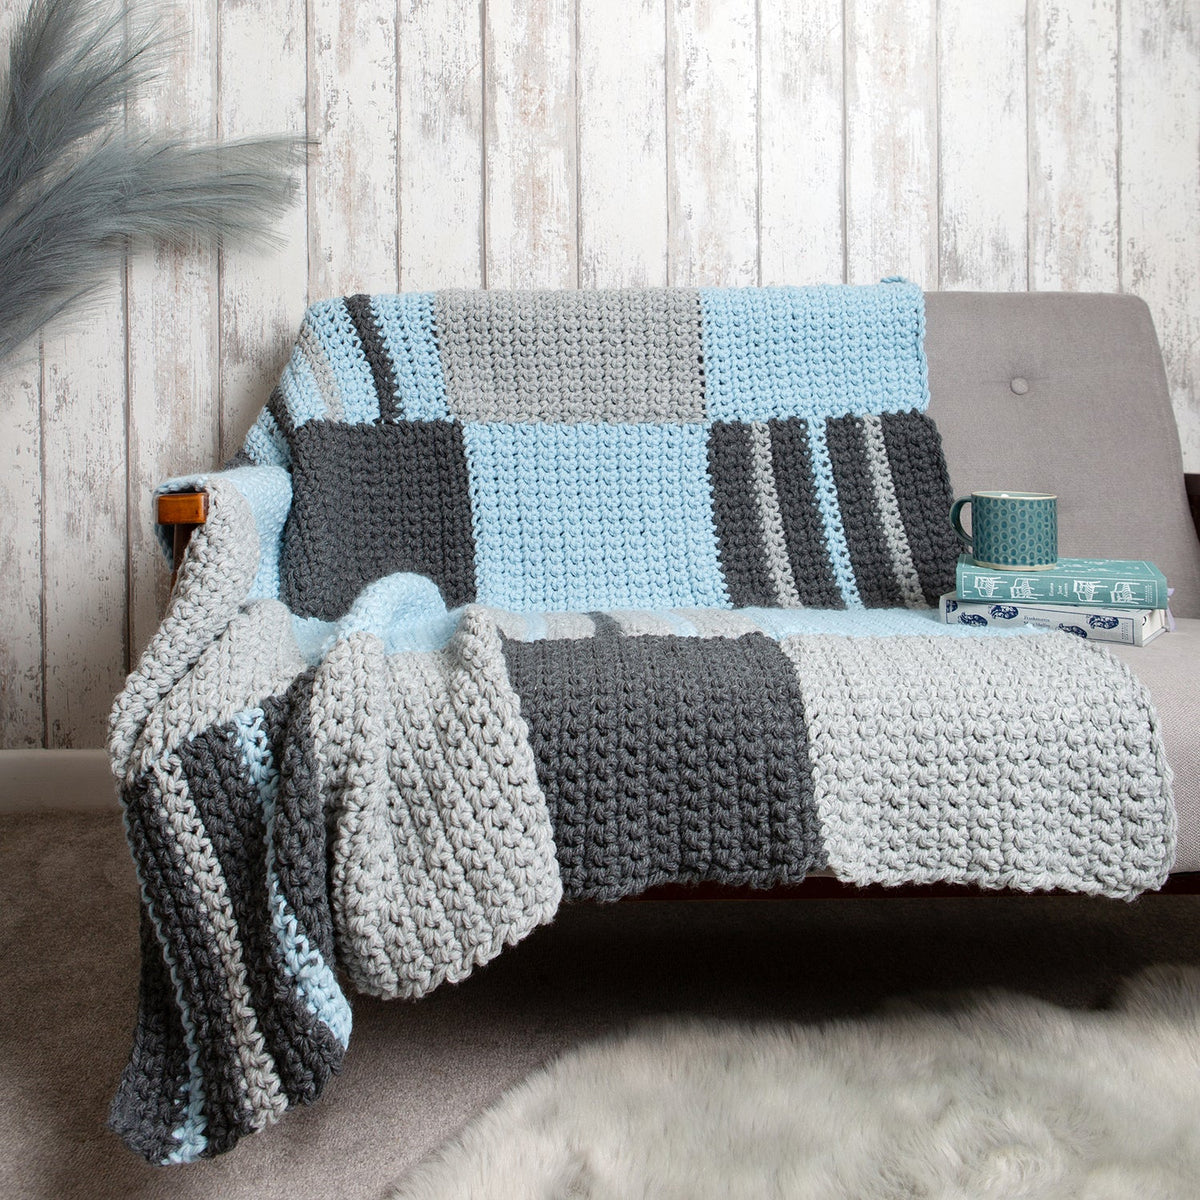 Beginners Basics Chequered Blanket Crochet Kit